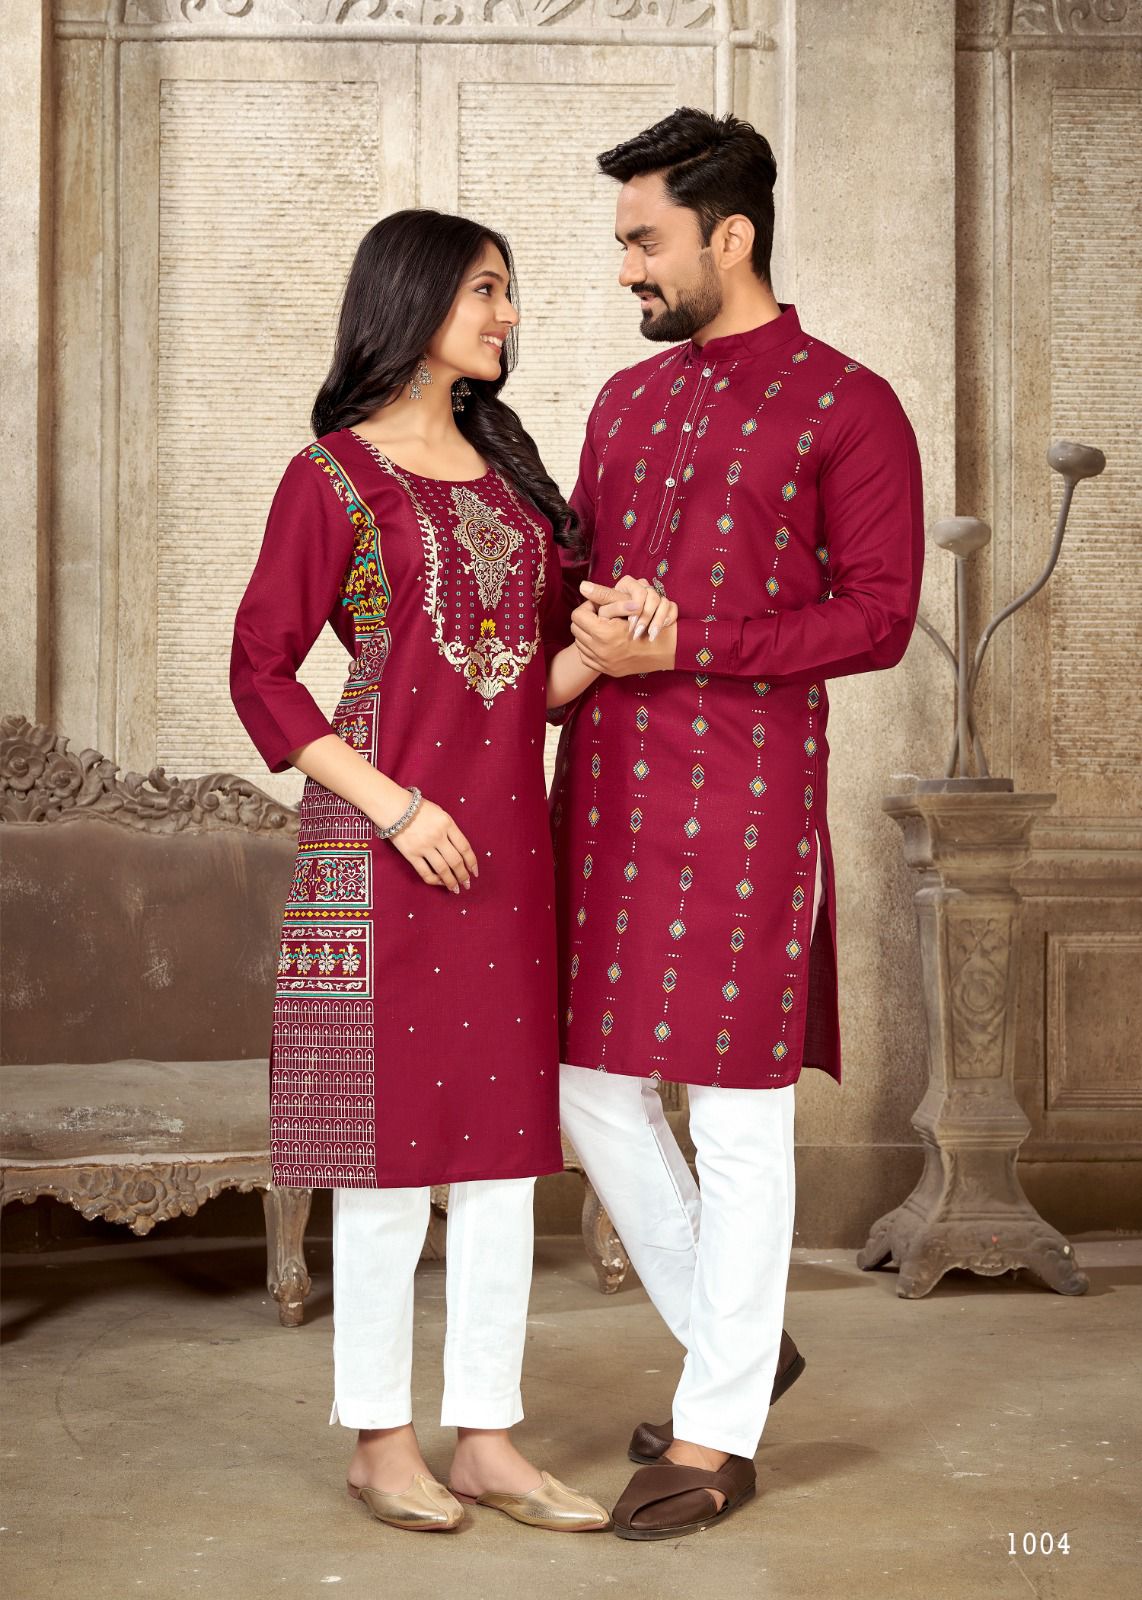 Couple matching Outfit | Indiase kleding, Trouwjurk, Kleding